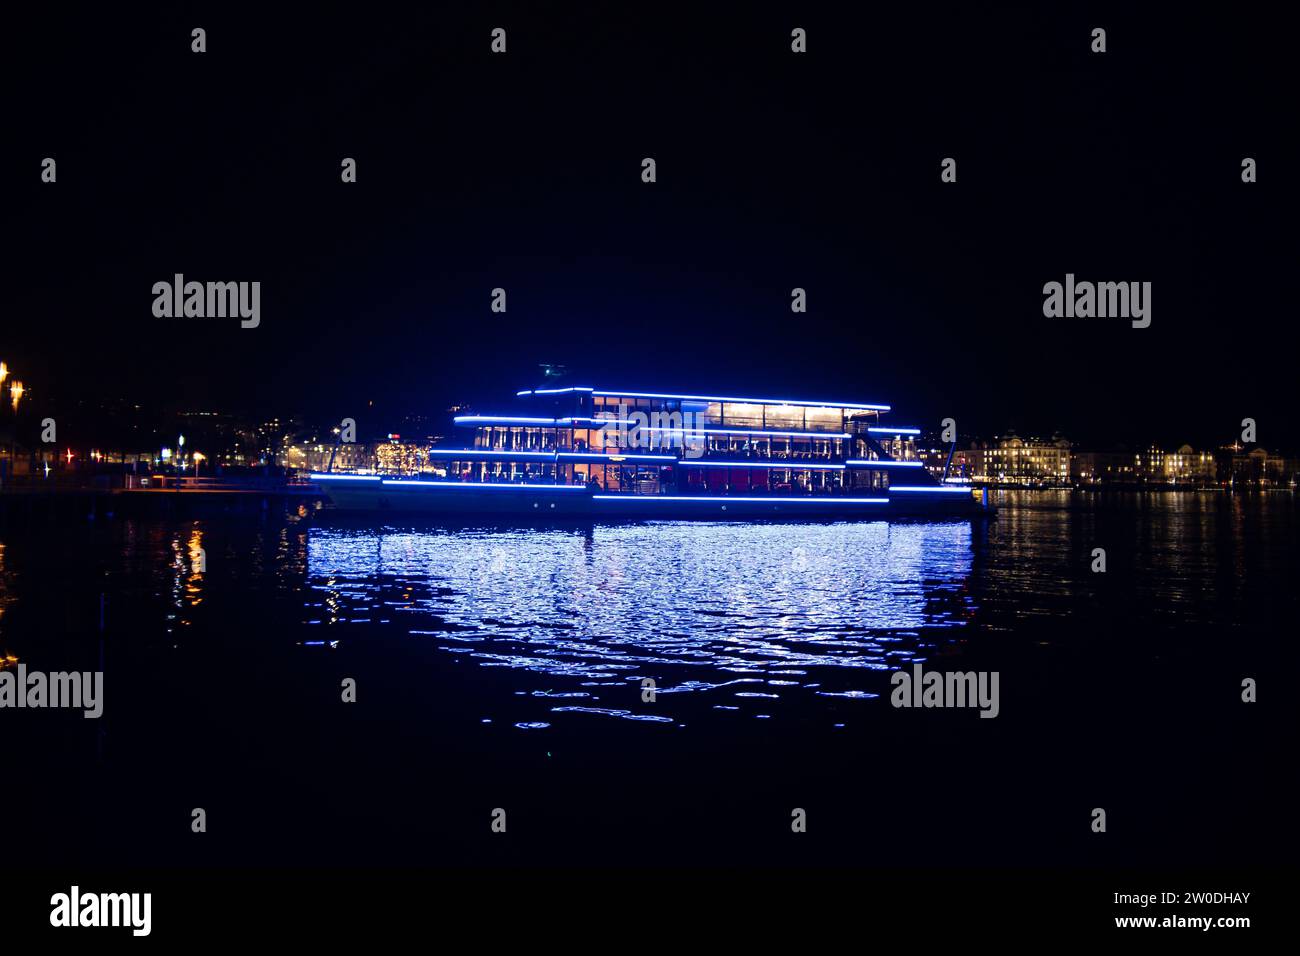 Nave passeggeri Panta Rhei attraccata sul lago di Zurigo di notte, splendide luci blu riflesse nell'acqua. Foto Stock